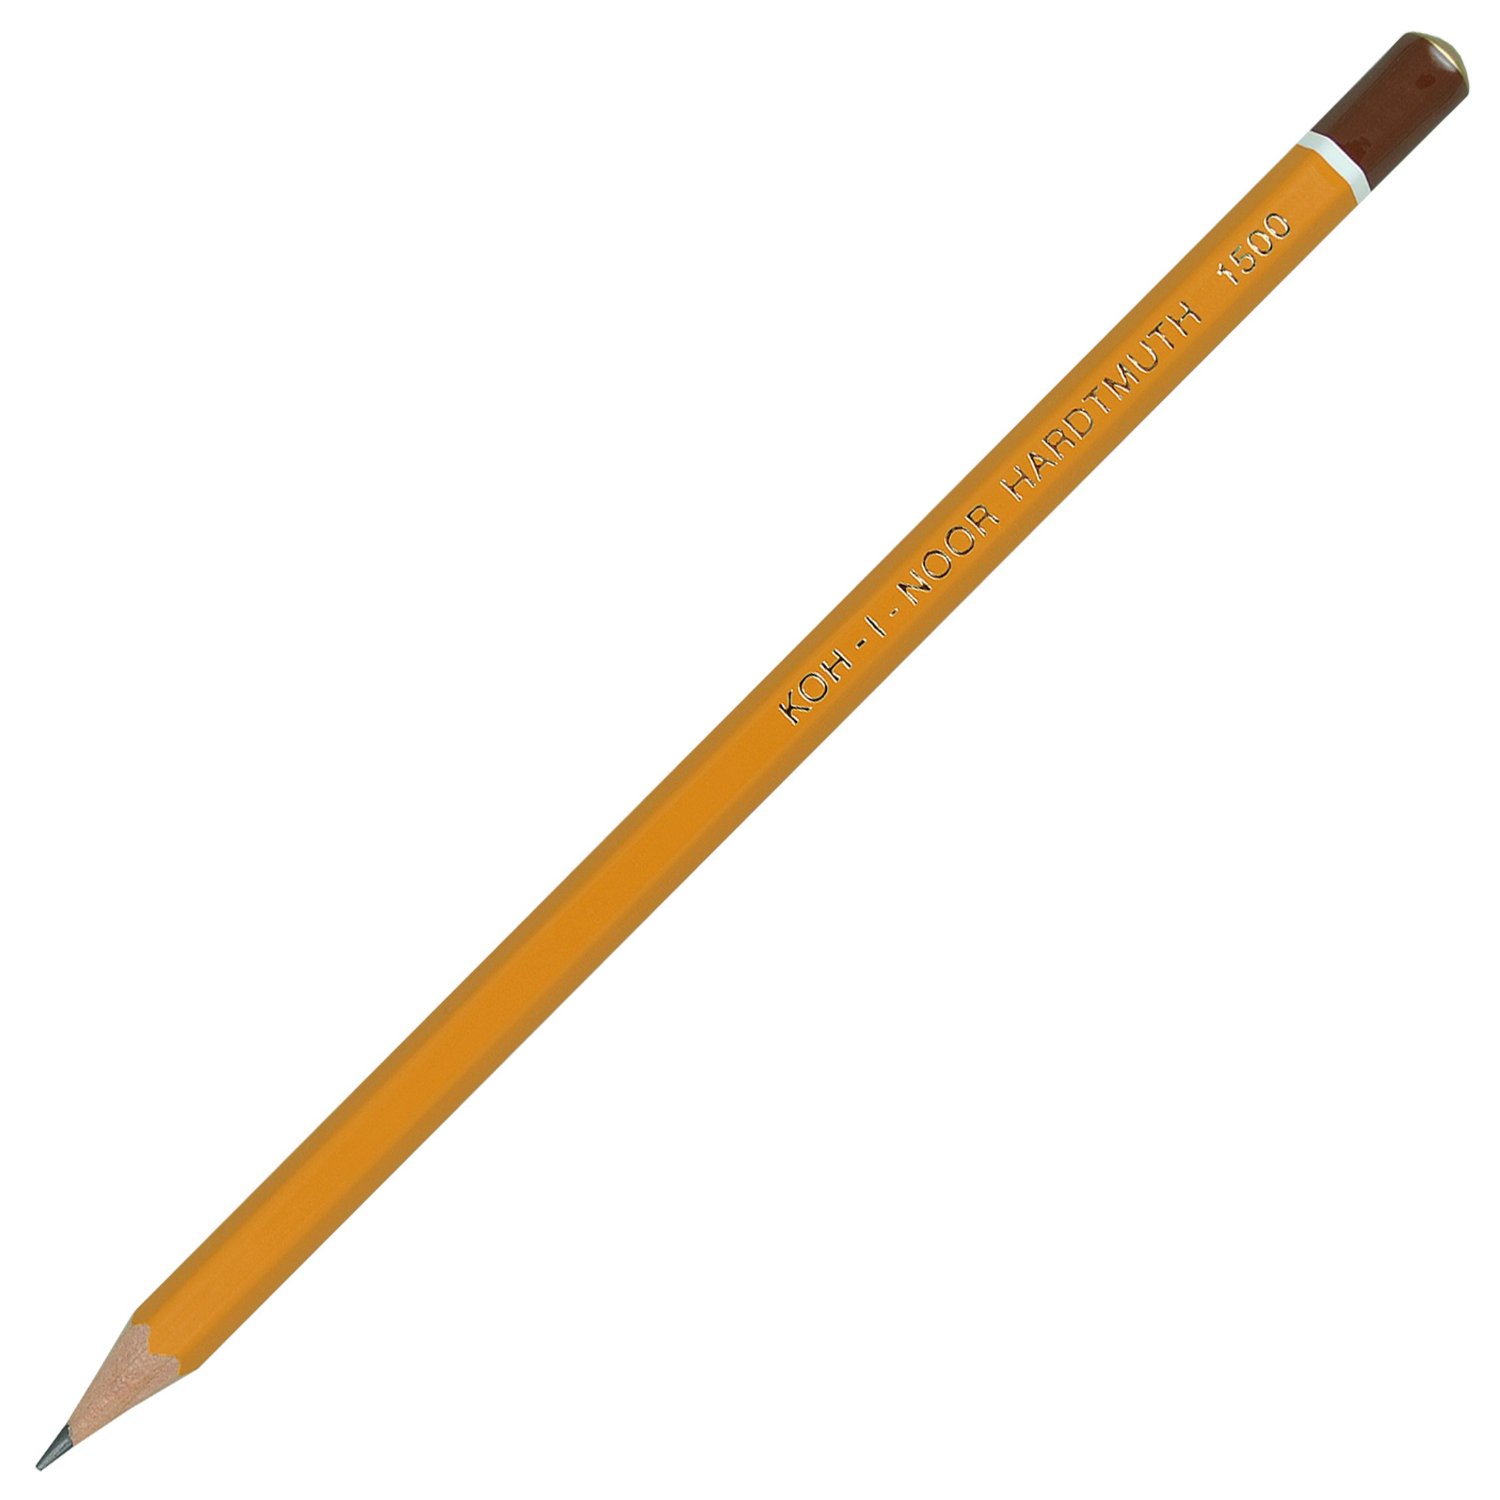 Олівець Koh-I-Noor графітний‚ 2В, загострений, ціна за 1 олівець, упаковка 12 штук 1500.2B